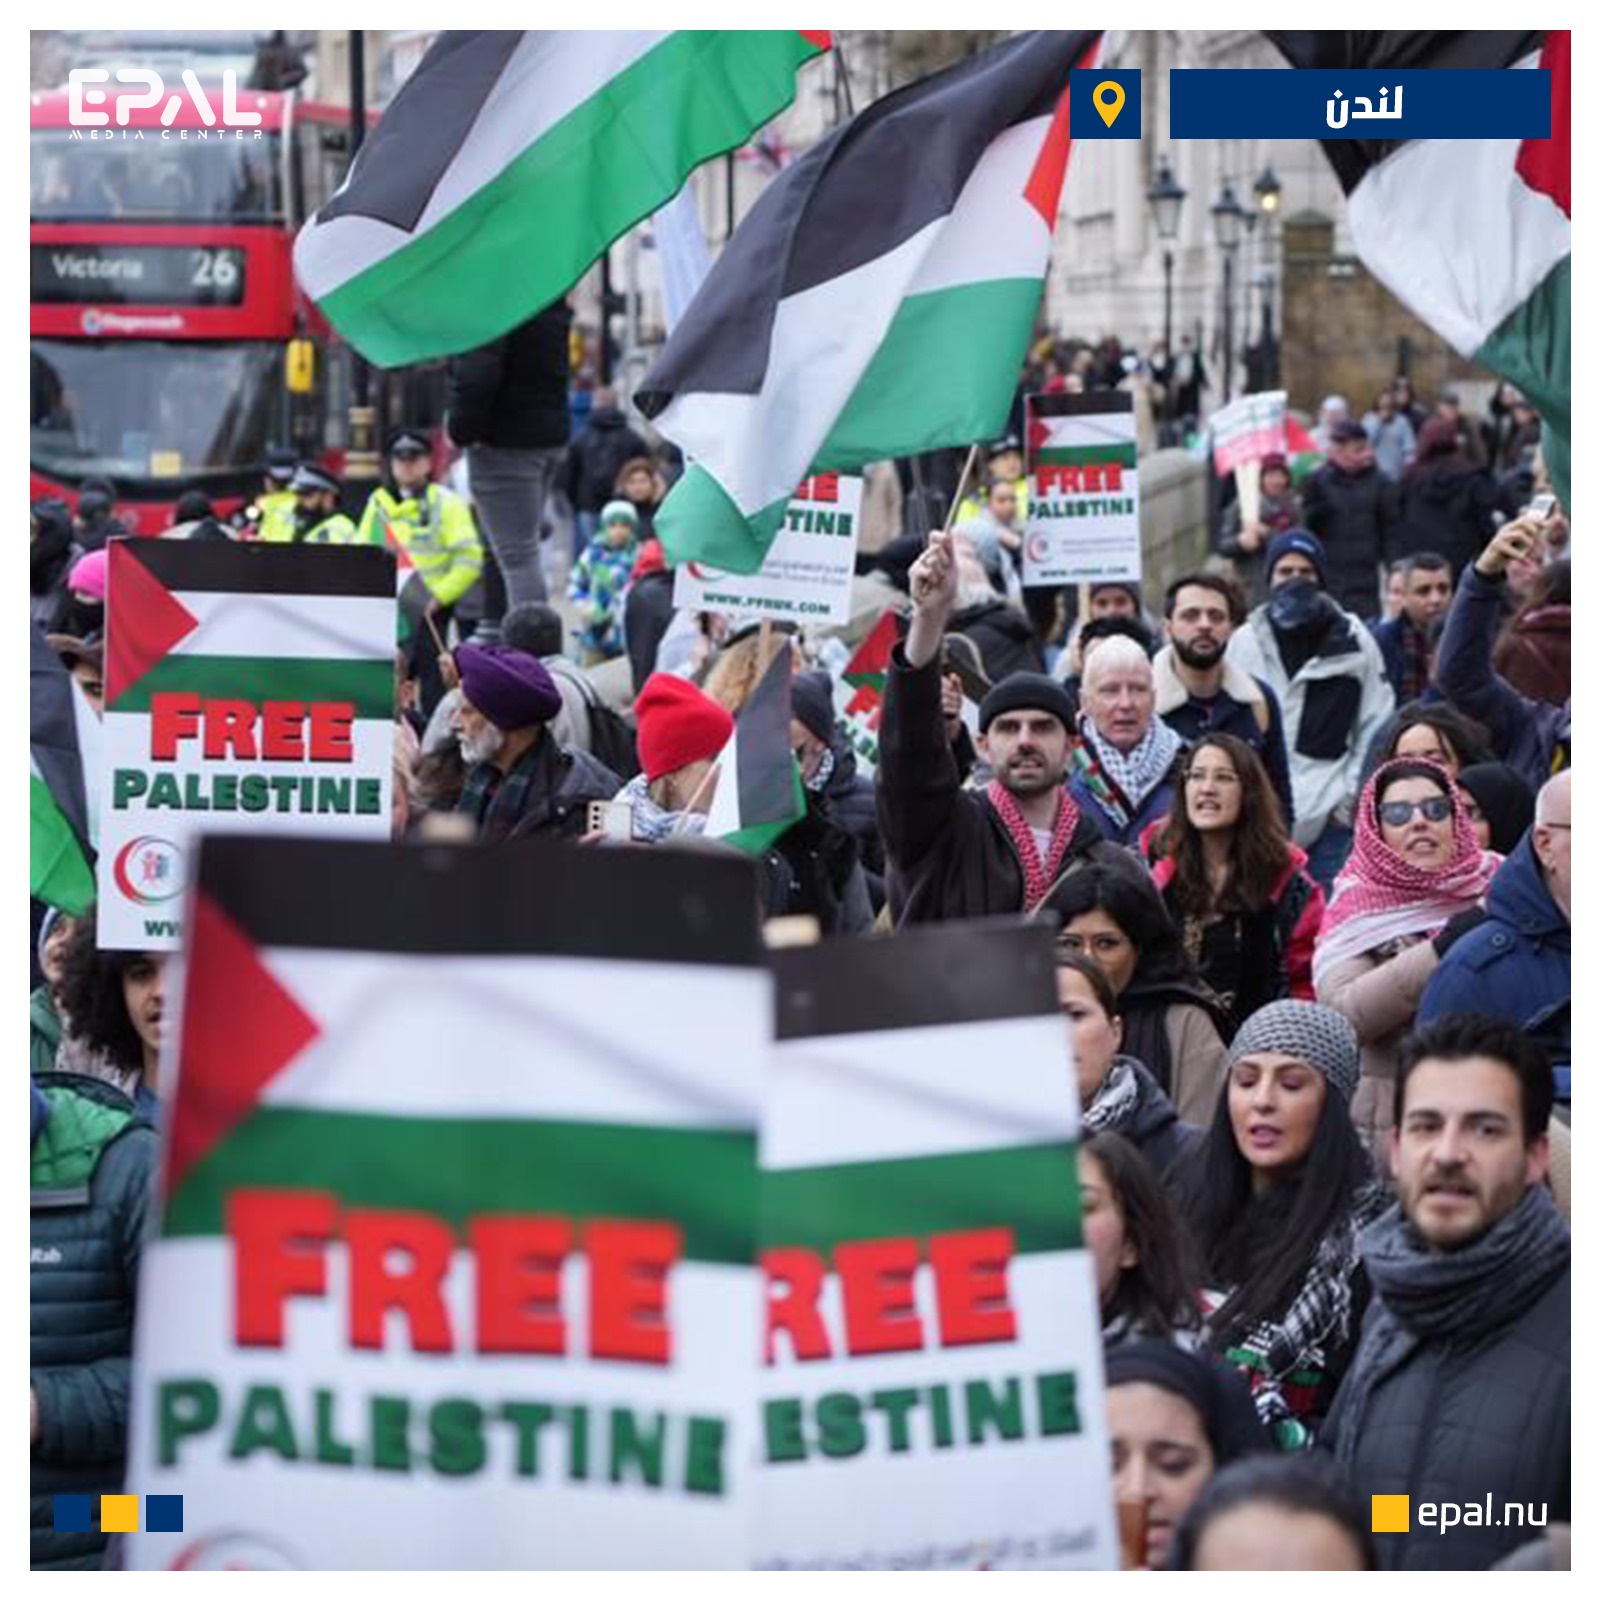 المسيرات الحاشدة تجتاح أوروبا نصرة لغزة في رأس السنة الميلادية (شاهد)